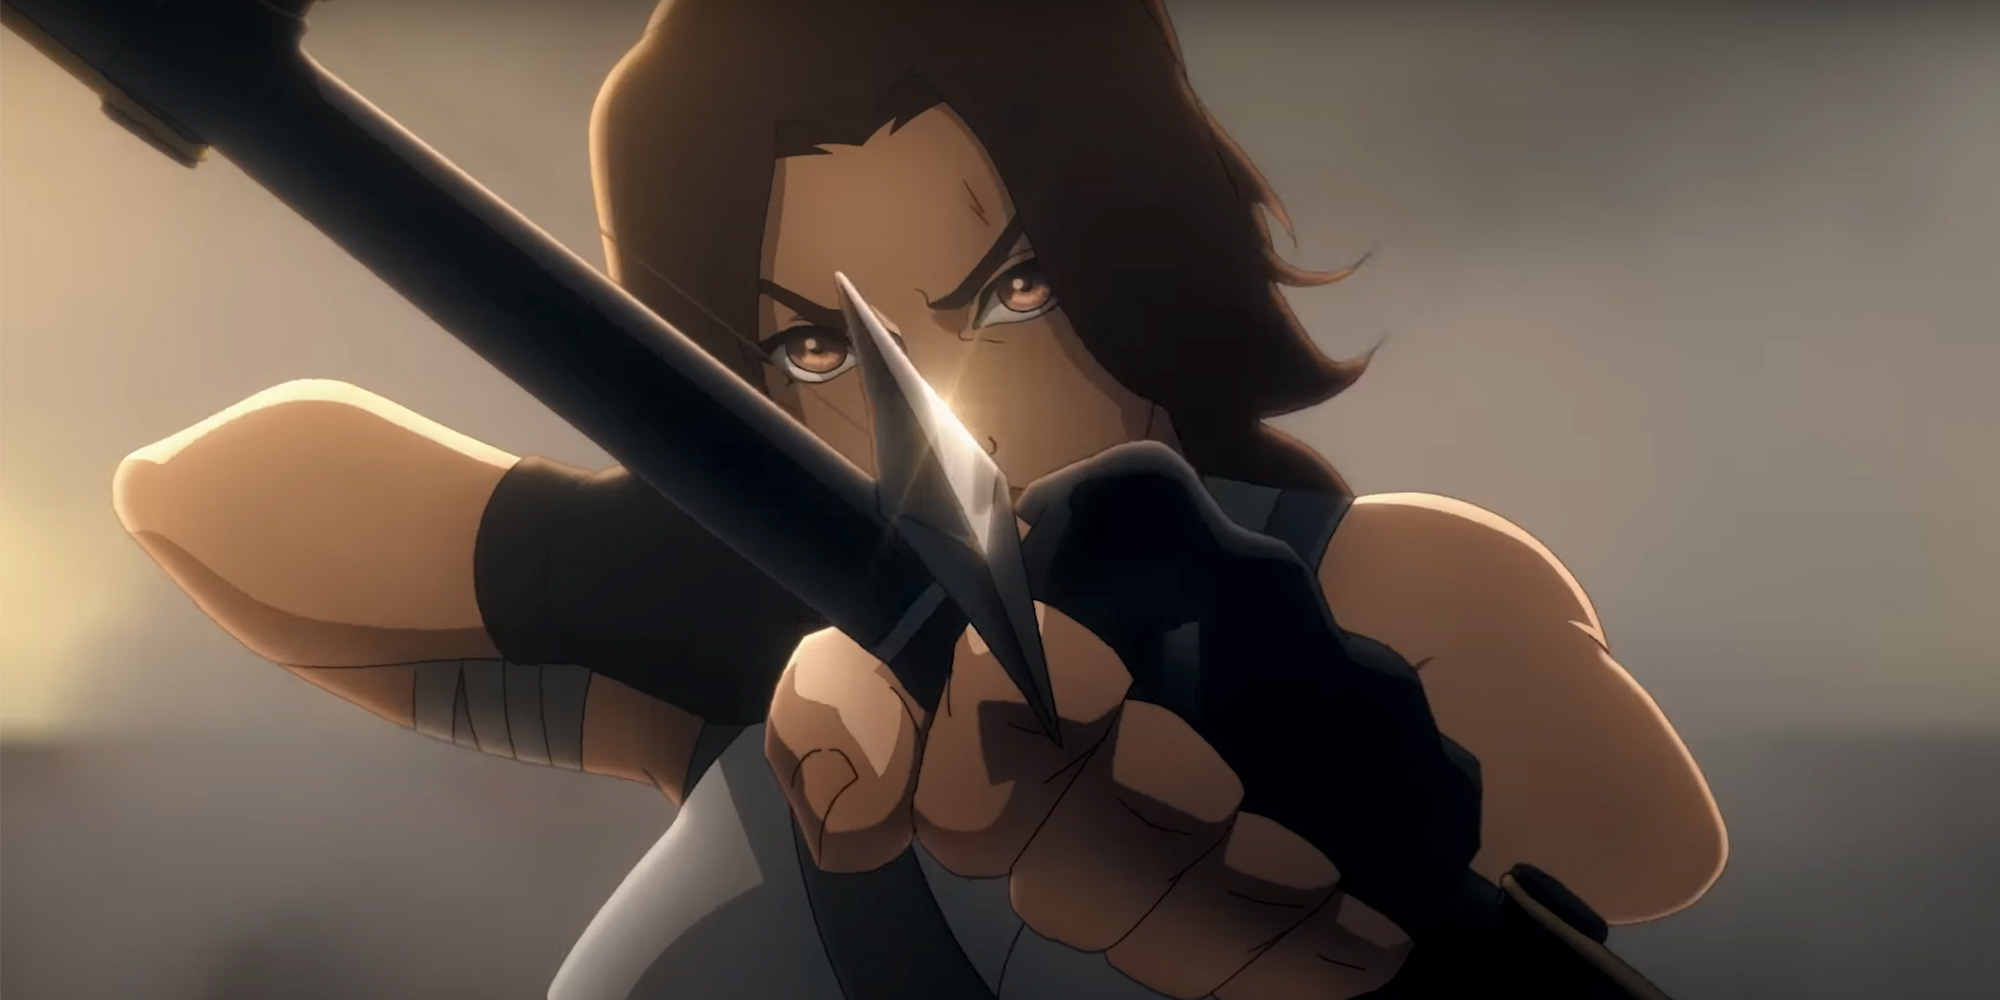 Lara Croft podbija Netflix: Tomb Raider Ogłoszono serial animowany Legend of Lara Croft oparty na kultowej serii gier wideo